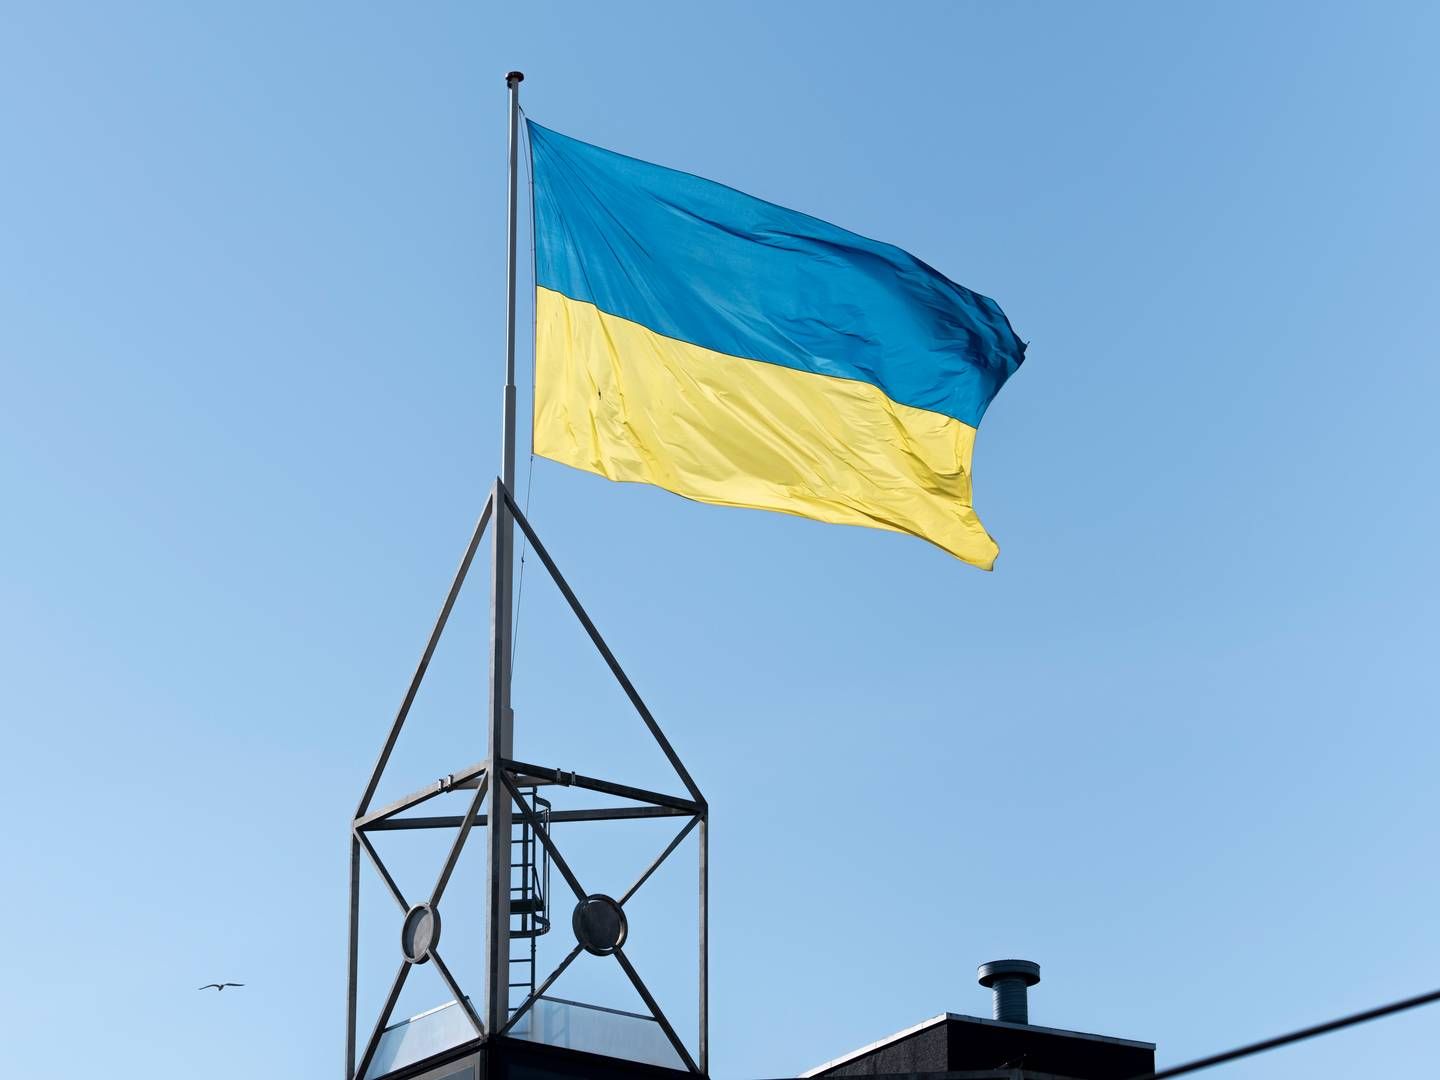 Sagen var anlagt af Ukraine, som har anklaget Rusland for at krænke Den Europæiske Menneskerettighedskonvention. | Foto: Rikke Kjær Poulsen